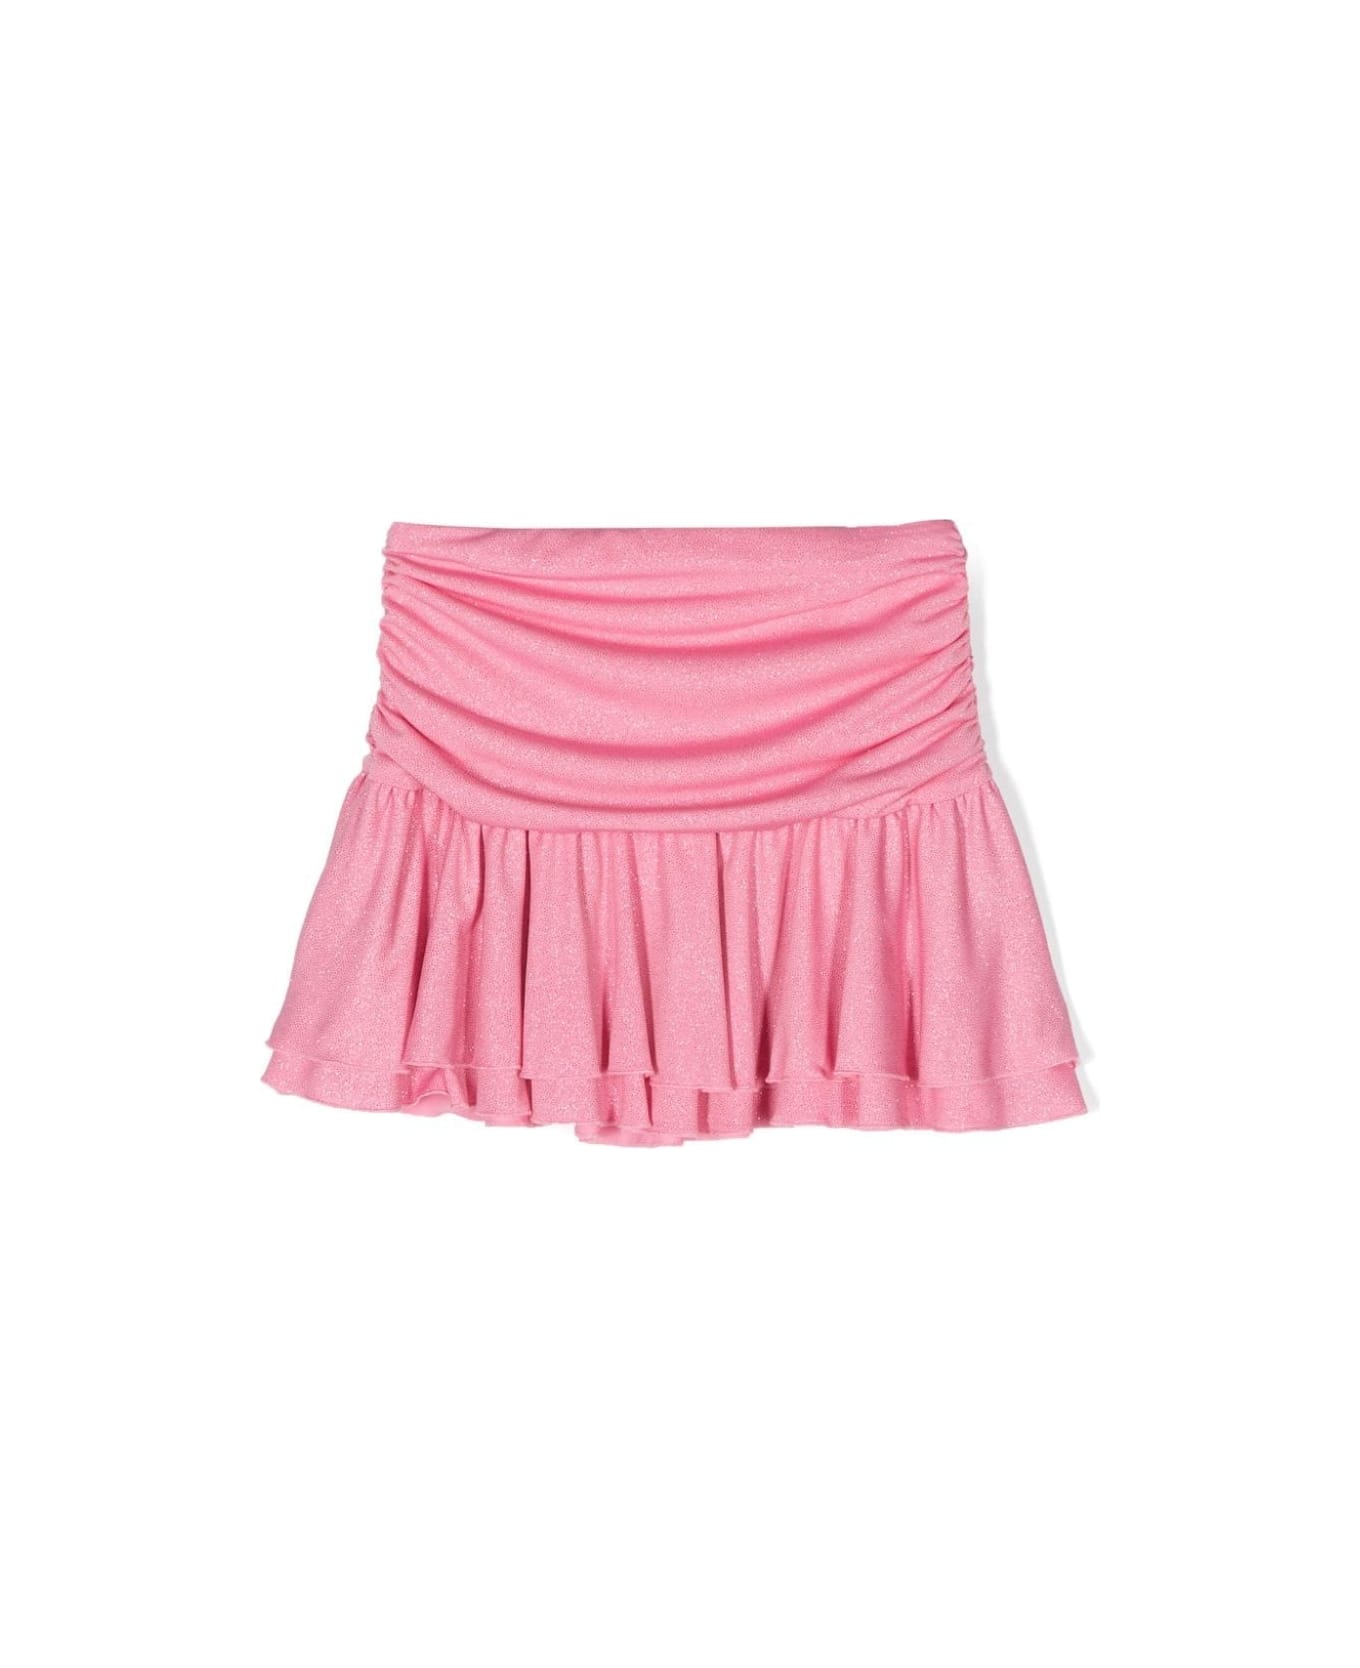 Miss Blumarine Pink Glitter Draped Mini Skirt - Pink